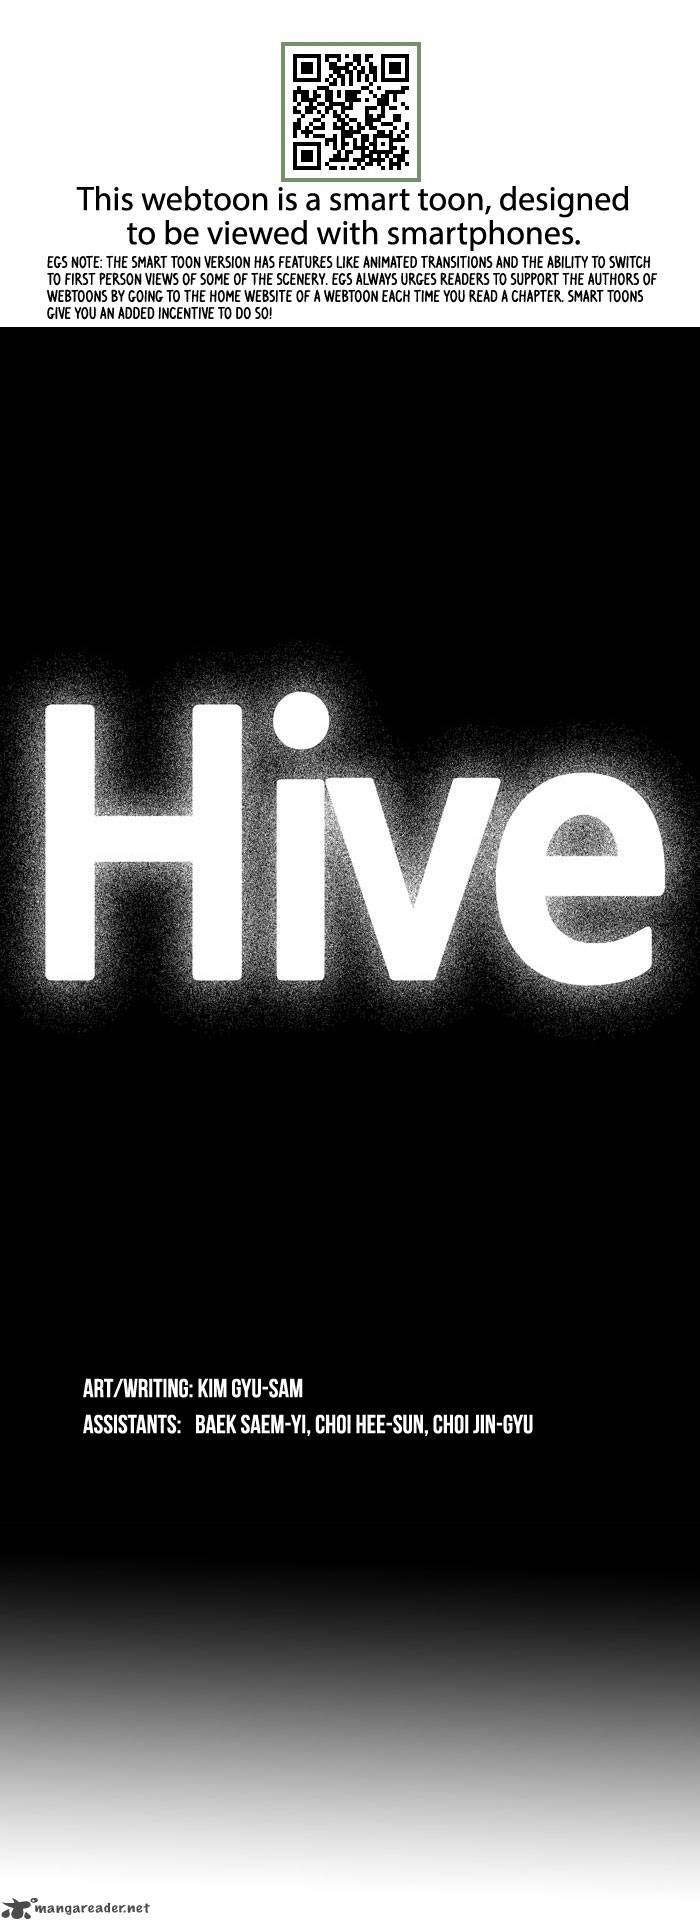 hive_3_2